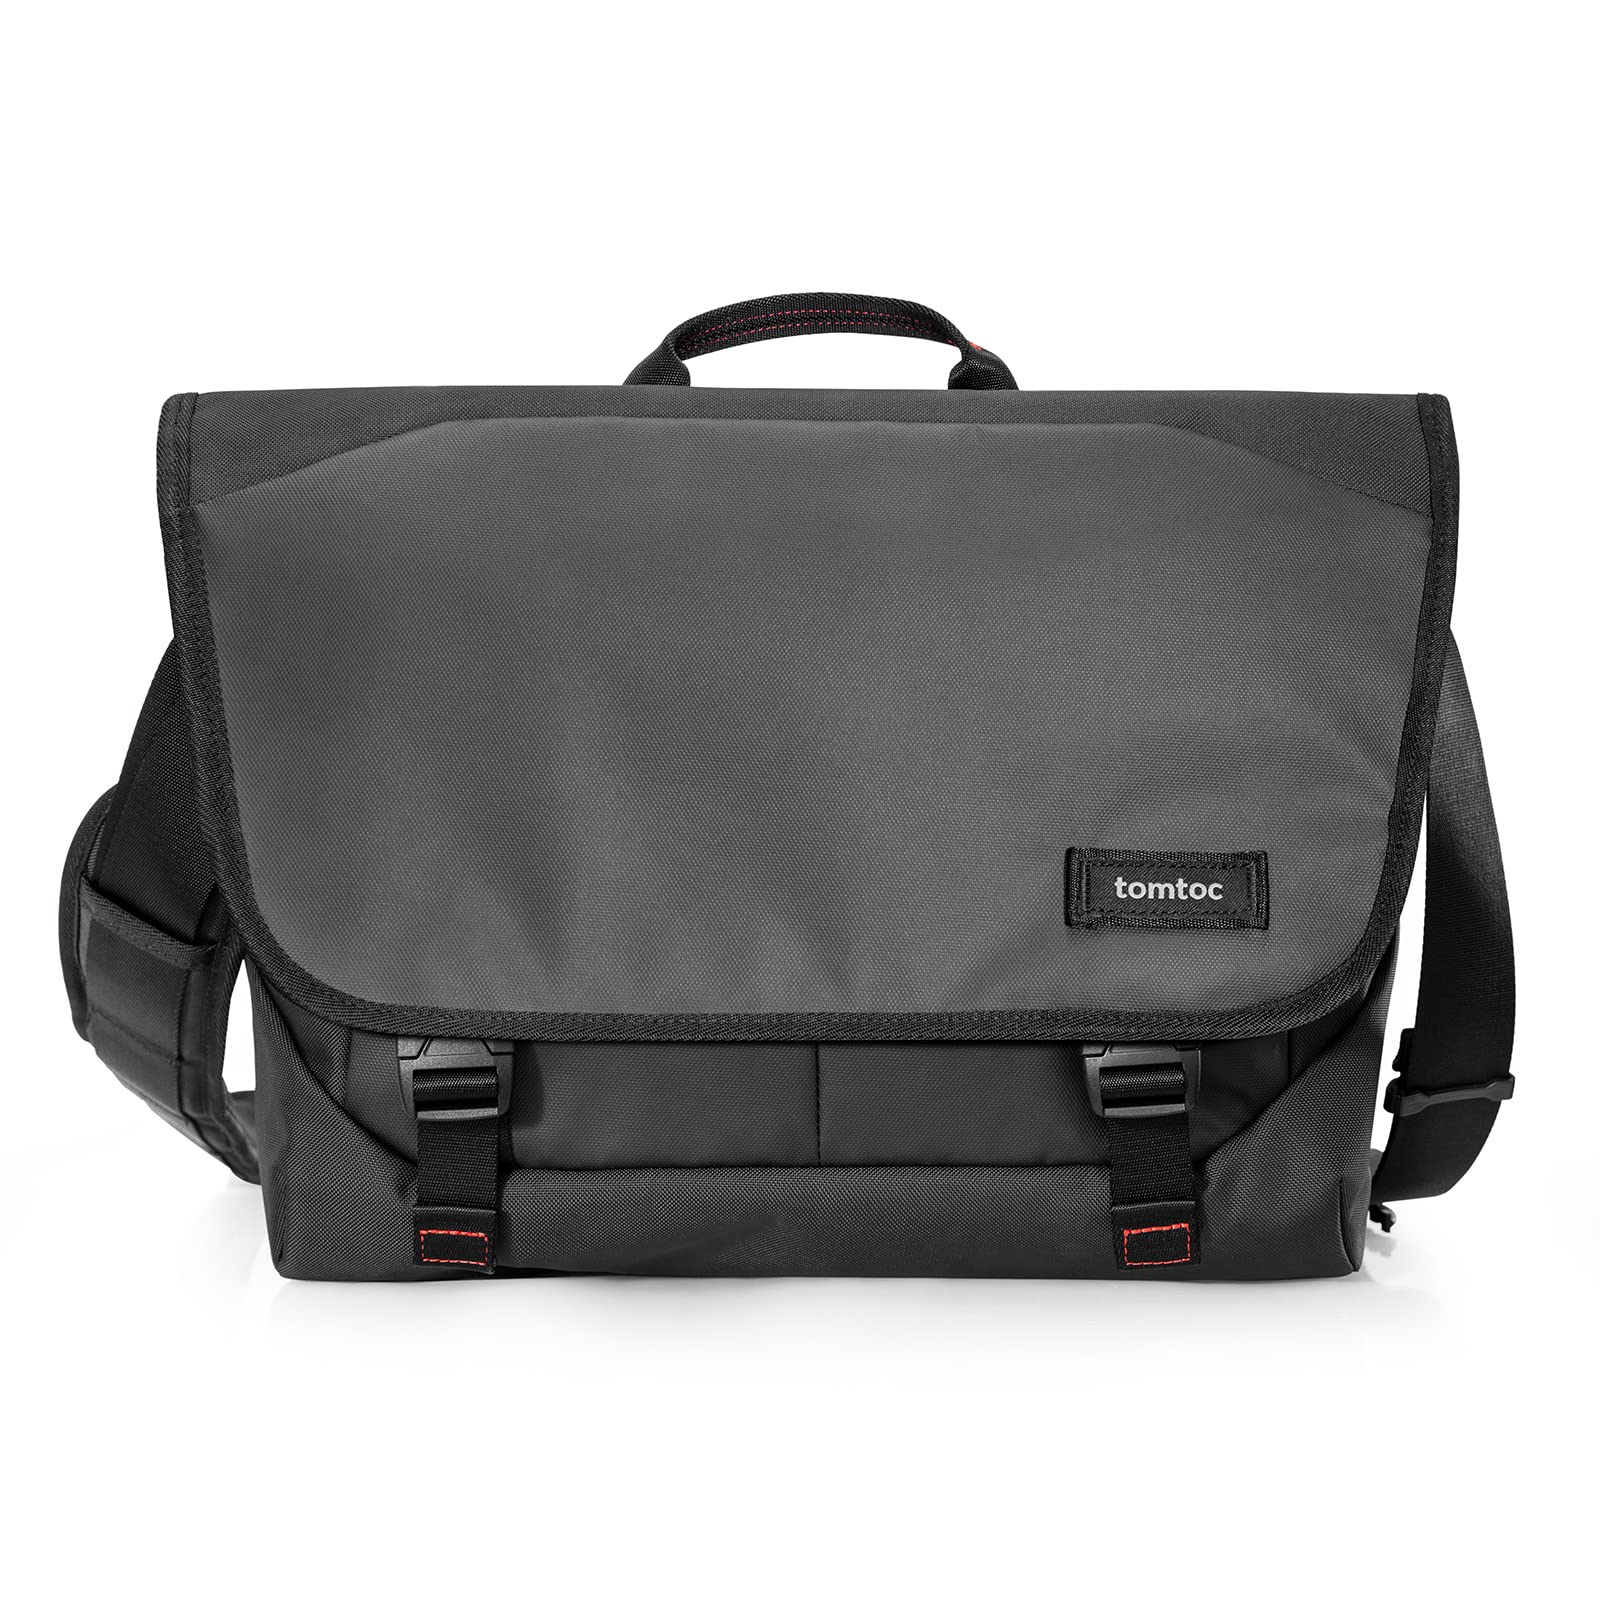 Waterproof Laptop & Messenger Bags, Free Shipping